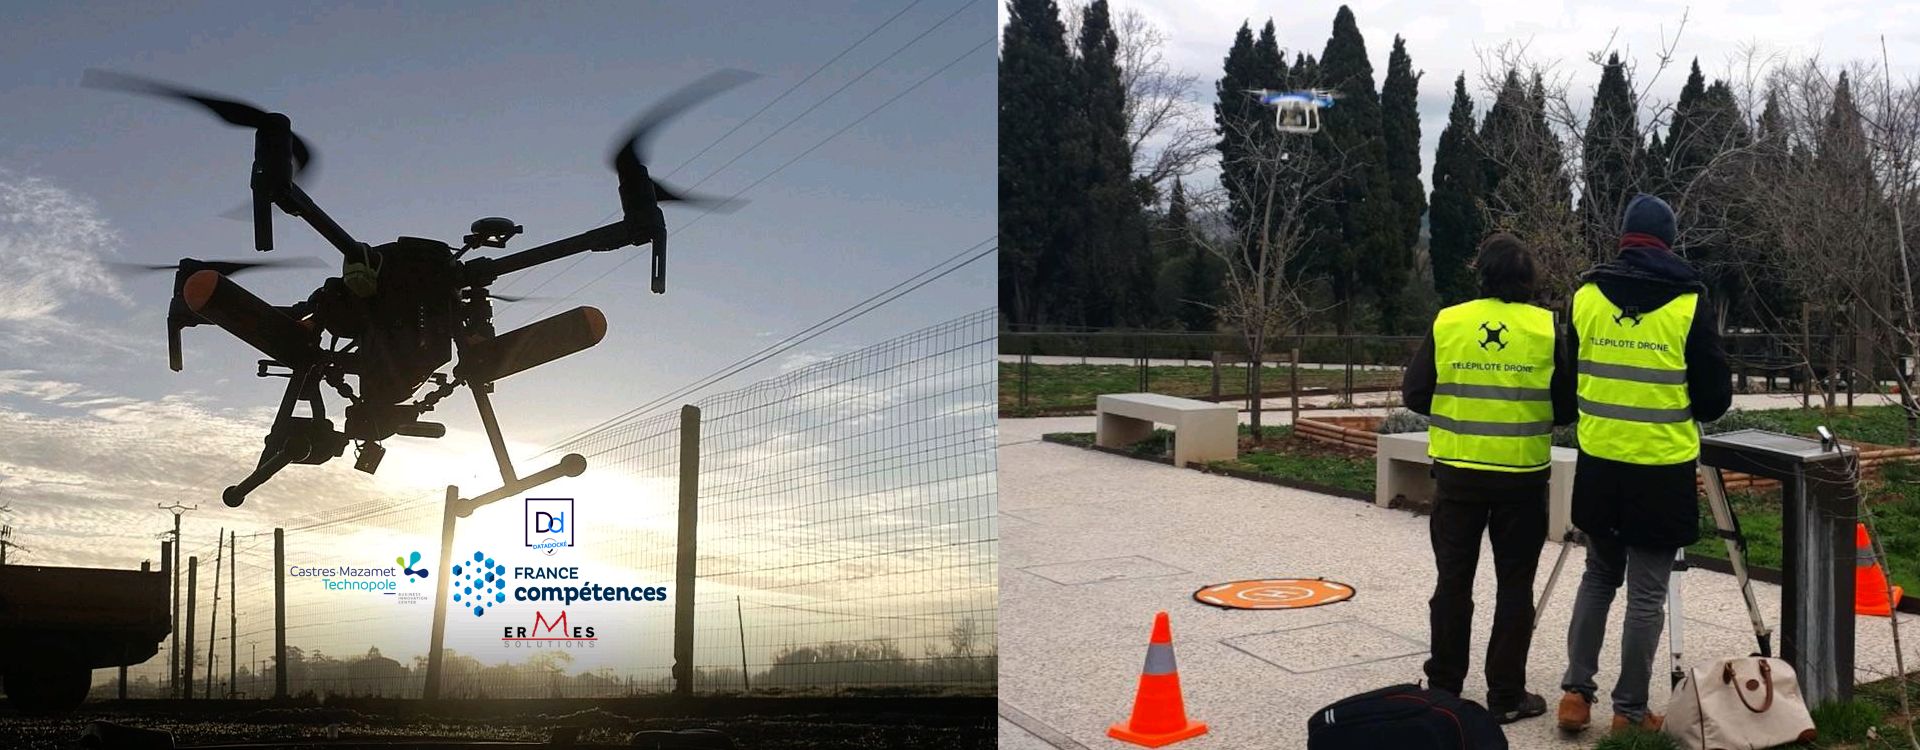 Drones Pluriel Prises de vue photo, vidéo et réalité virtuelle : Expériences immersives, Tourisme, Patrimoine, Villes et Villages, <br> Documentaires, Evénements culturels et sportifs